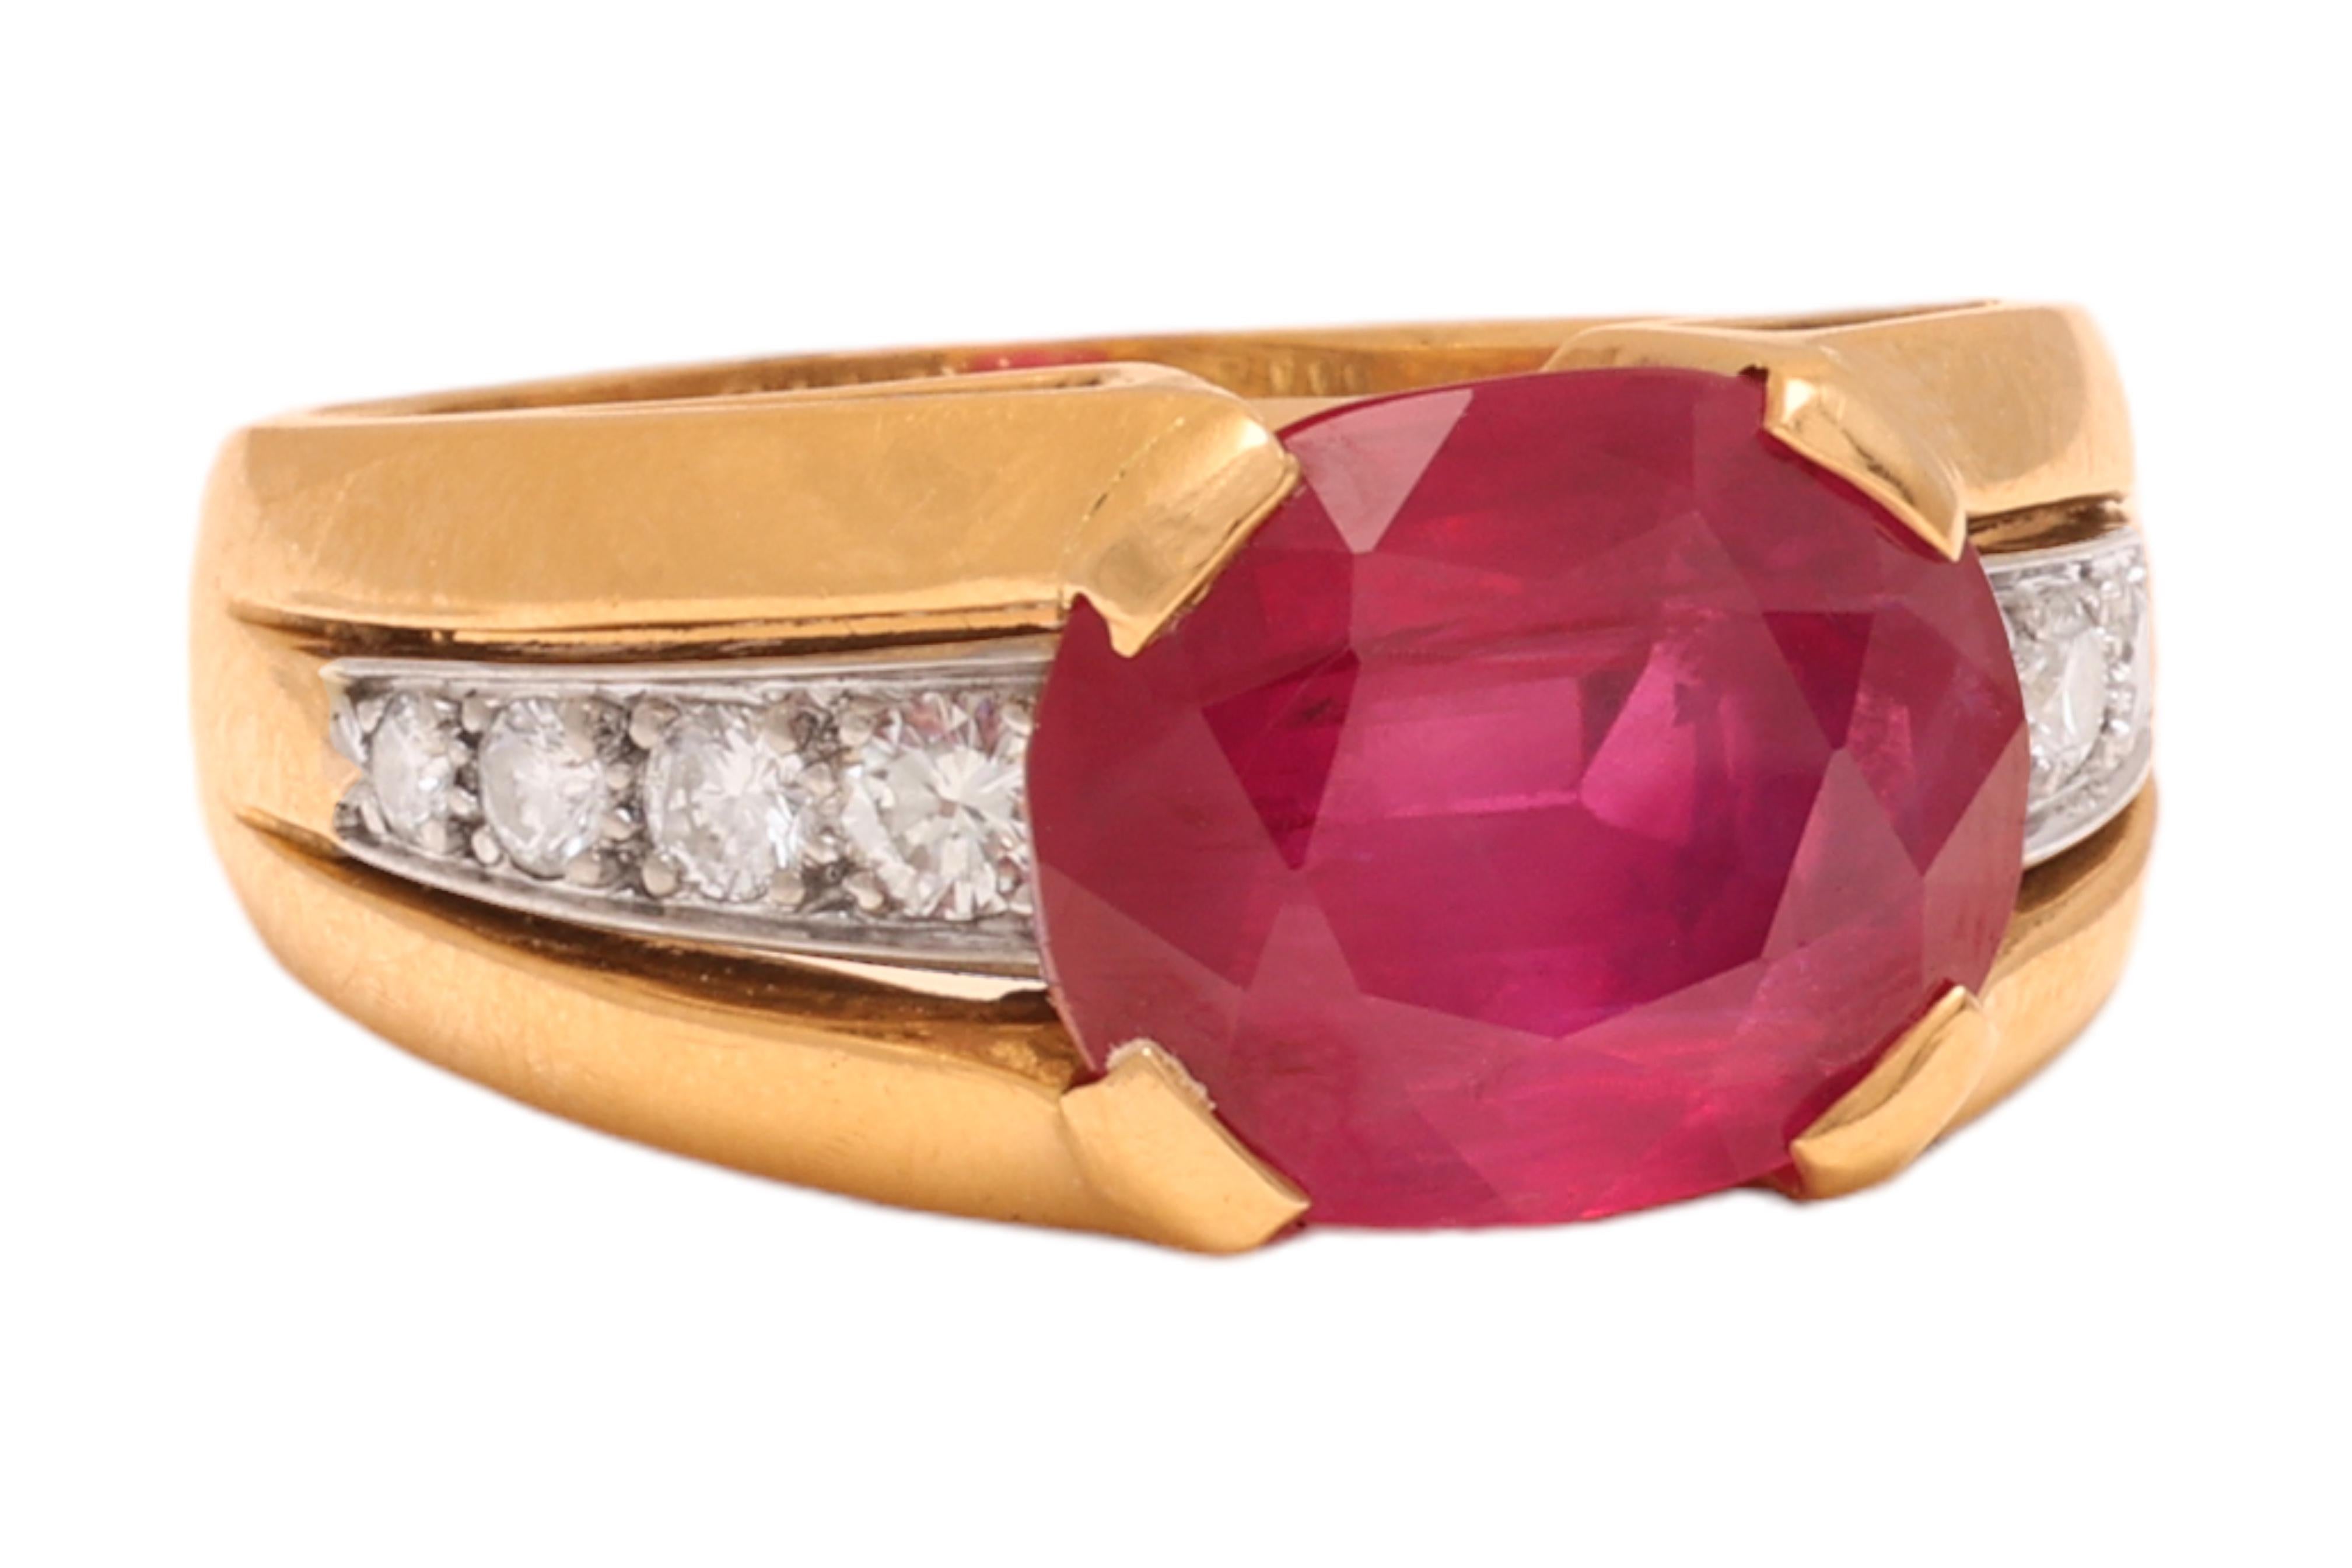 Magnifique 18 kt. Bague en or jaune avec un diamant de 7,81 ct. Burmese No Heat Ruby 

Le Rubis est certifié par Gübelin & GRS 

Rubis : Rose - Rouge, Coussin - Forme ovale, Rubis de Birmanie 7,81 ct. Pas d'indication de chauffage

Diamants :